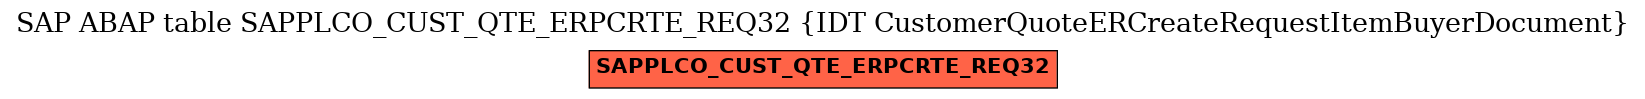 E-R Diagram for table SAPPLCO_CUST_QTE_ERPCRTE_REQ32 (IDT CustomerQuoteERCreateRequestItemBuyerDocument)